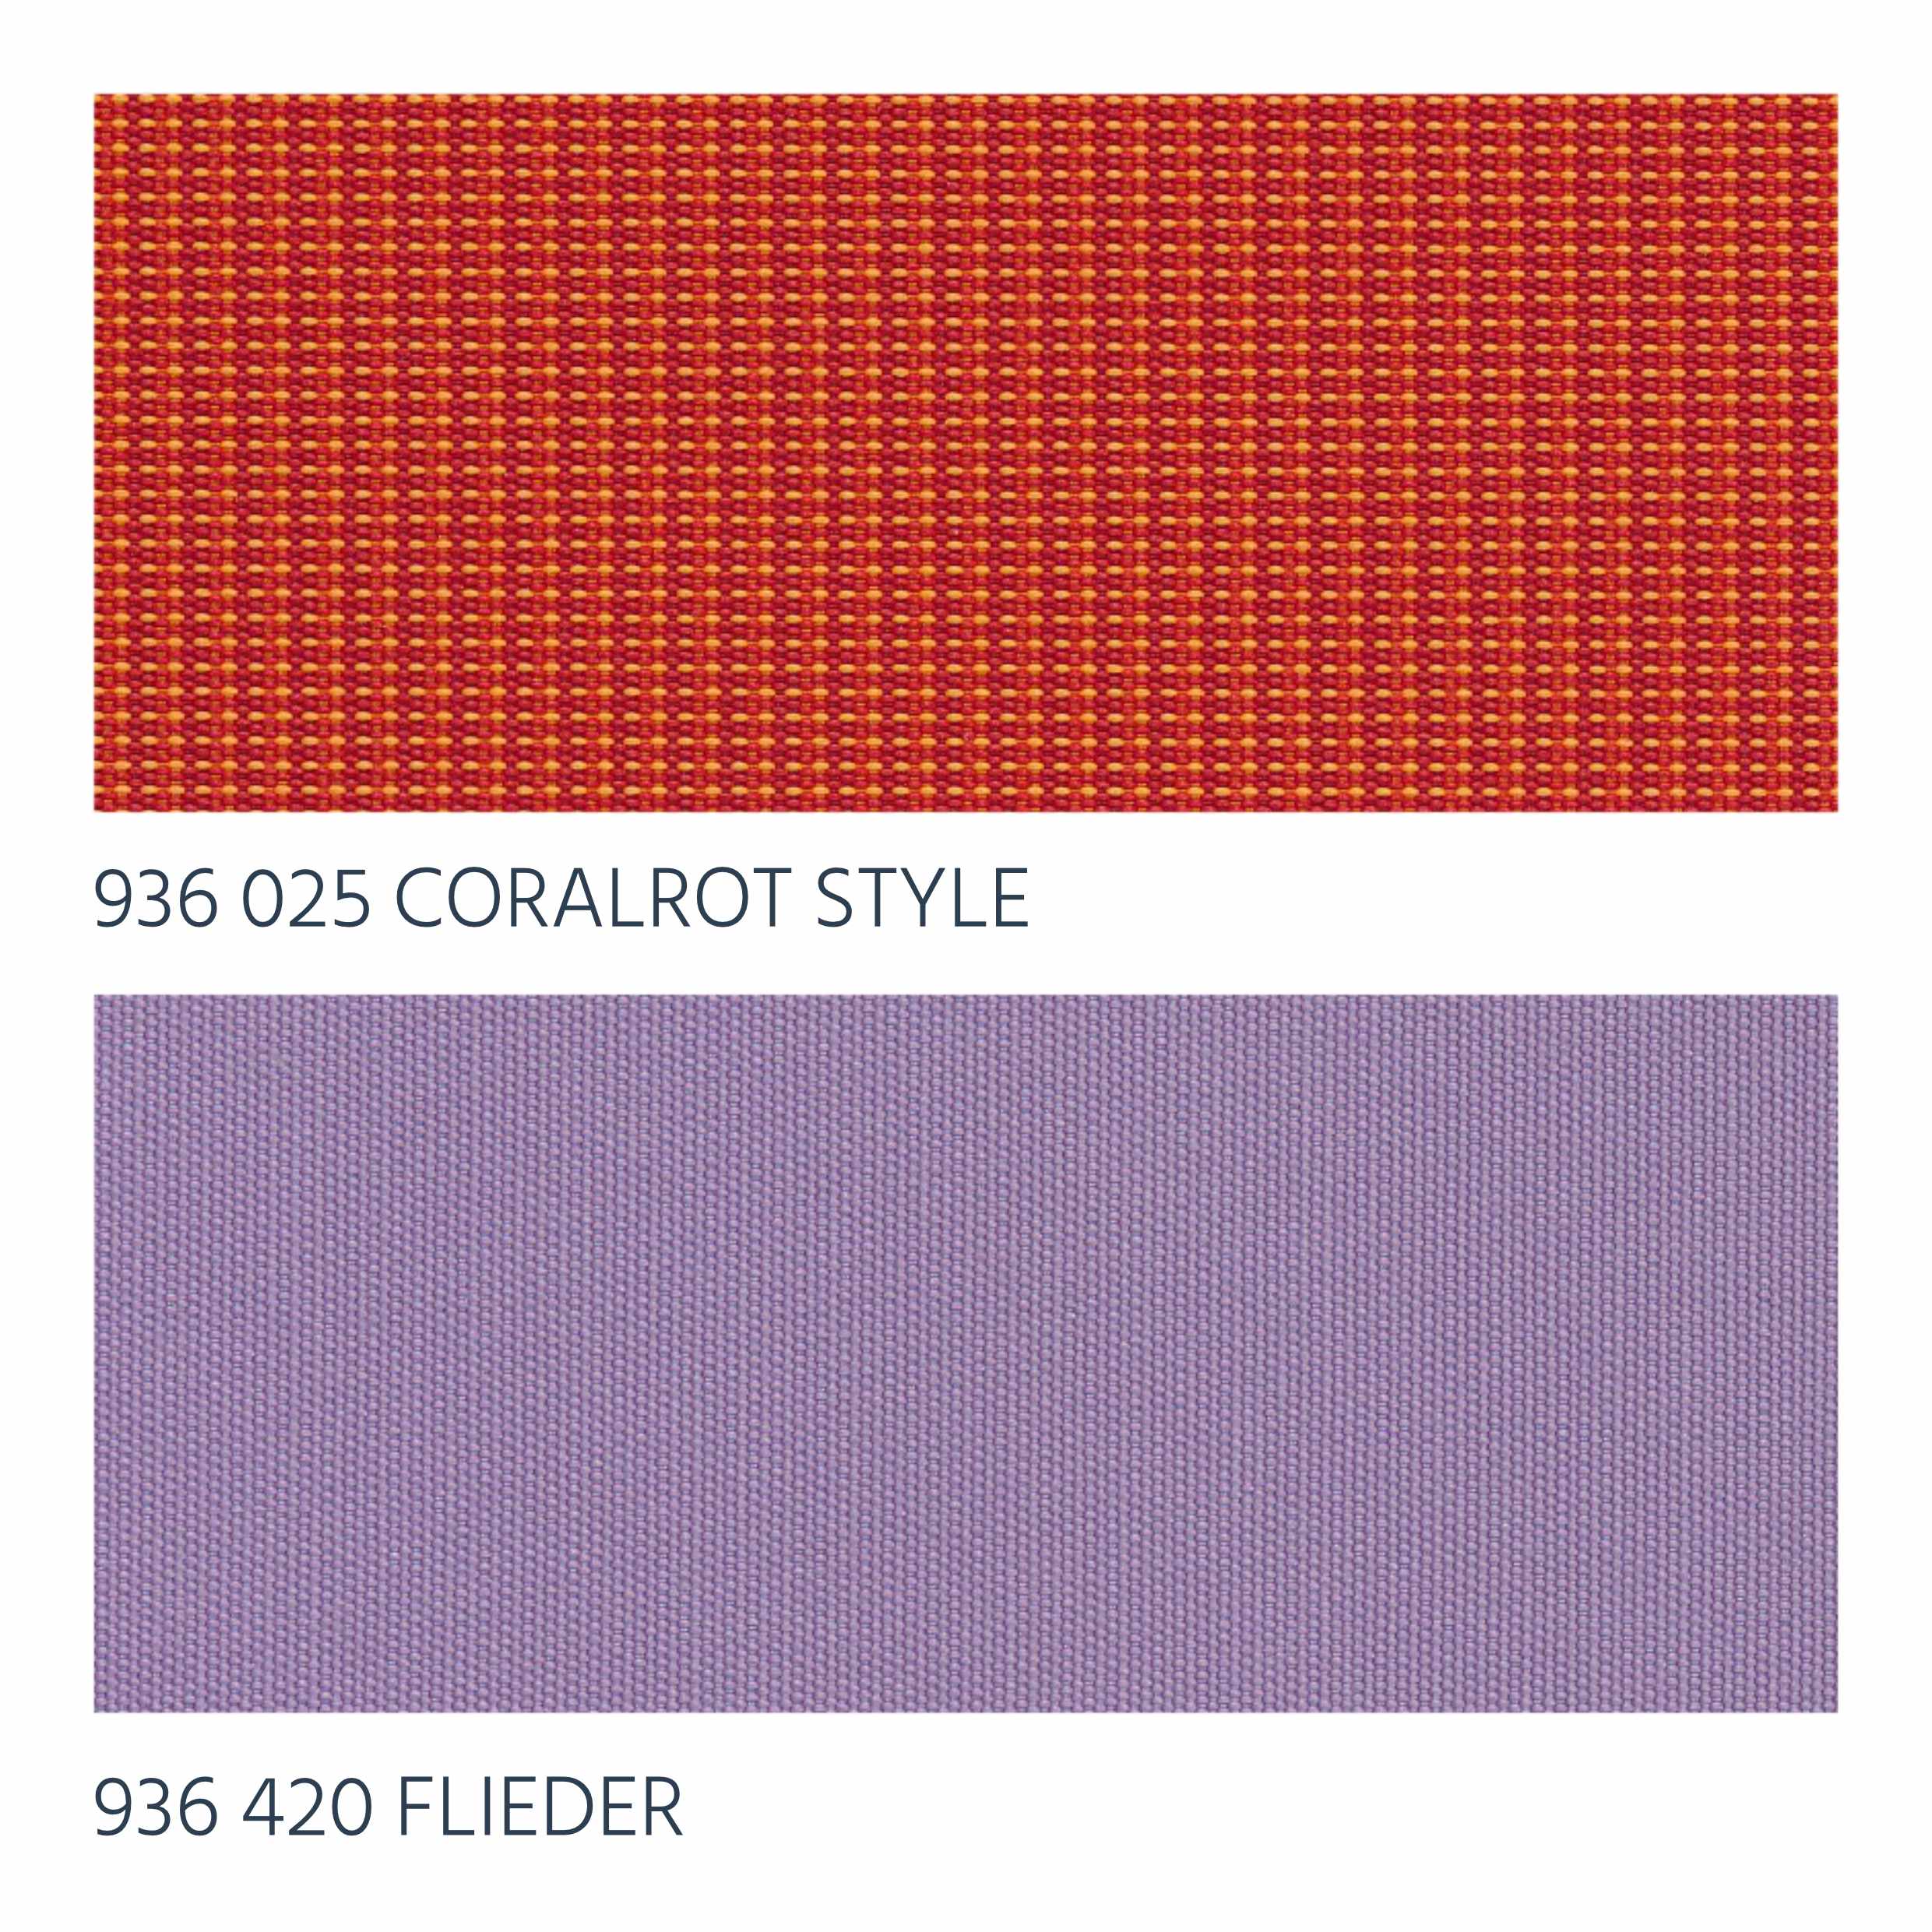 Coralrot Style & Flieder